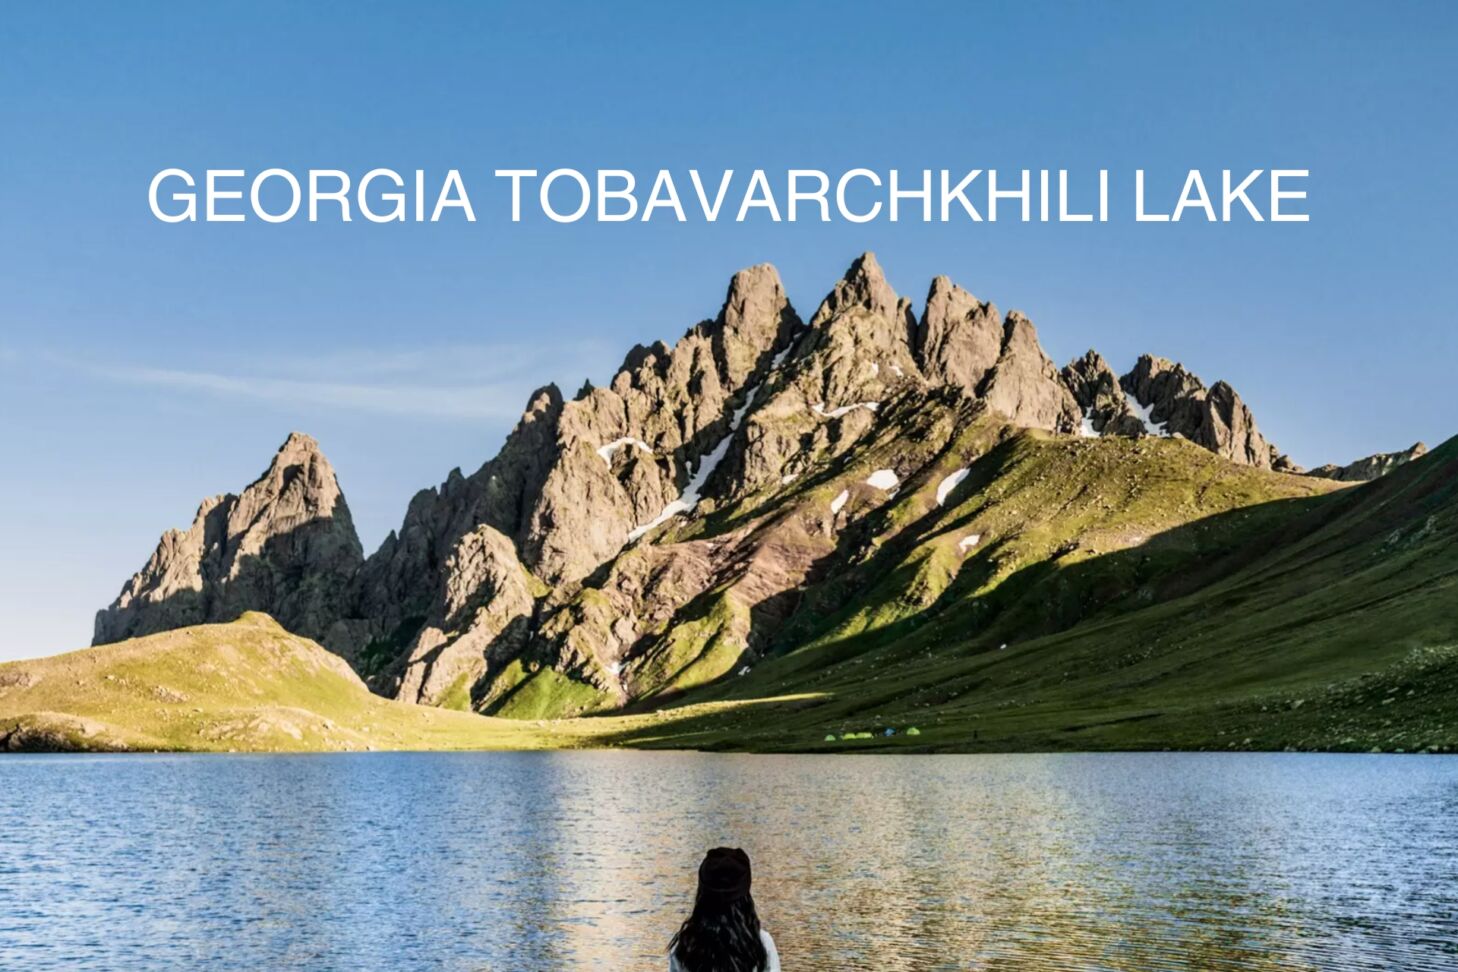 GEORGIA TOBAVARCHKHILI LAKE